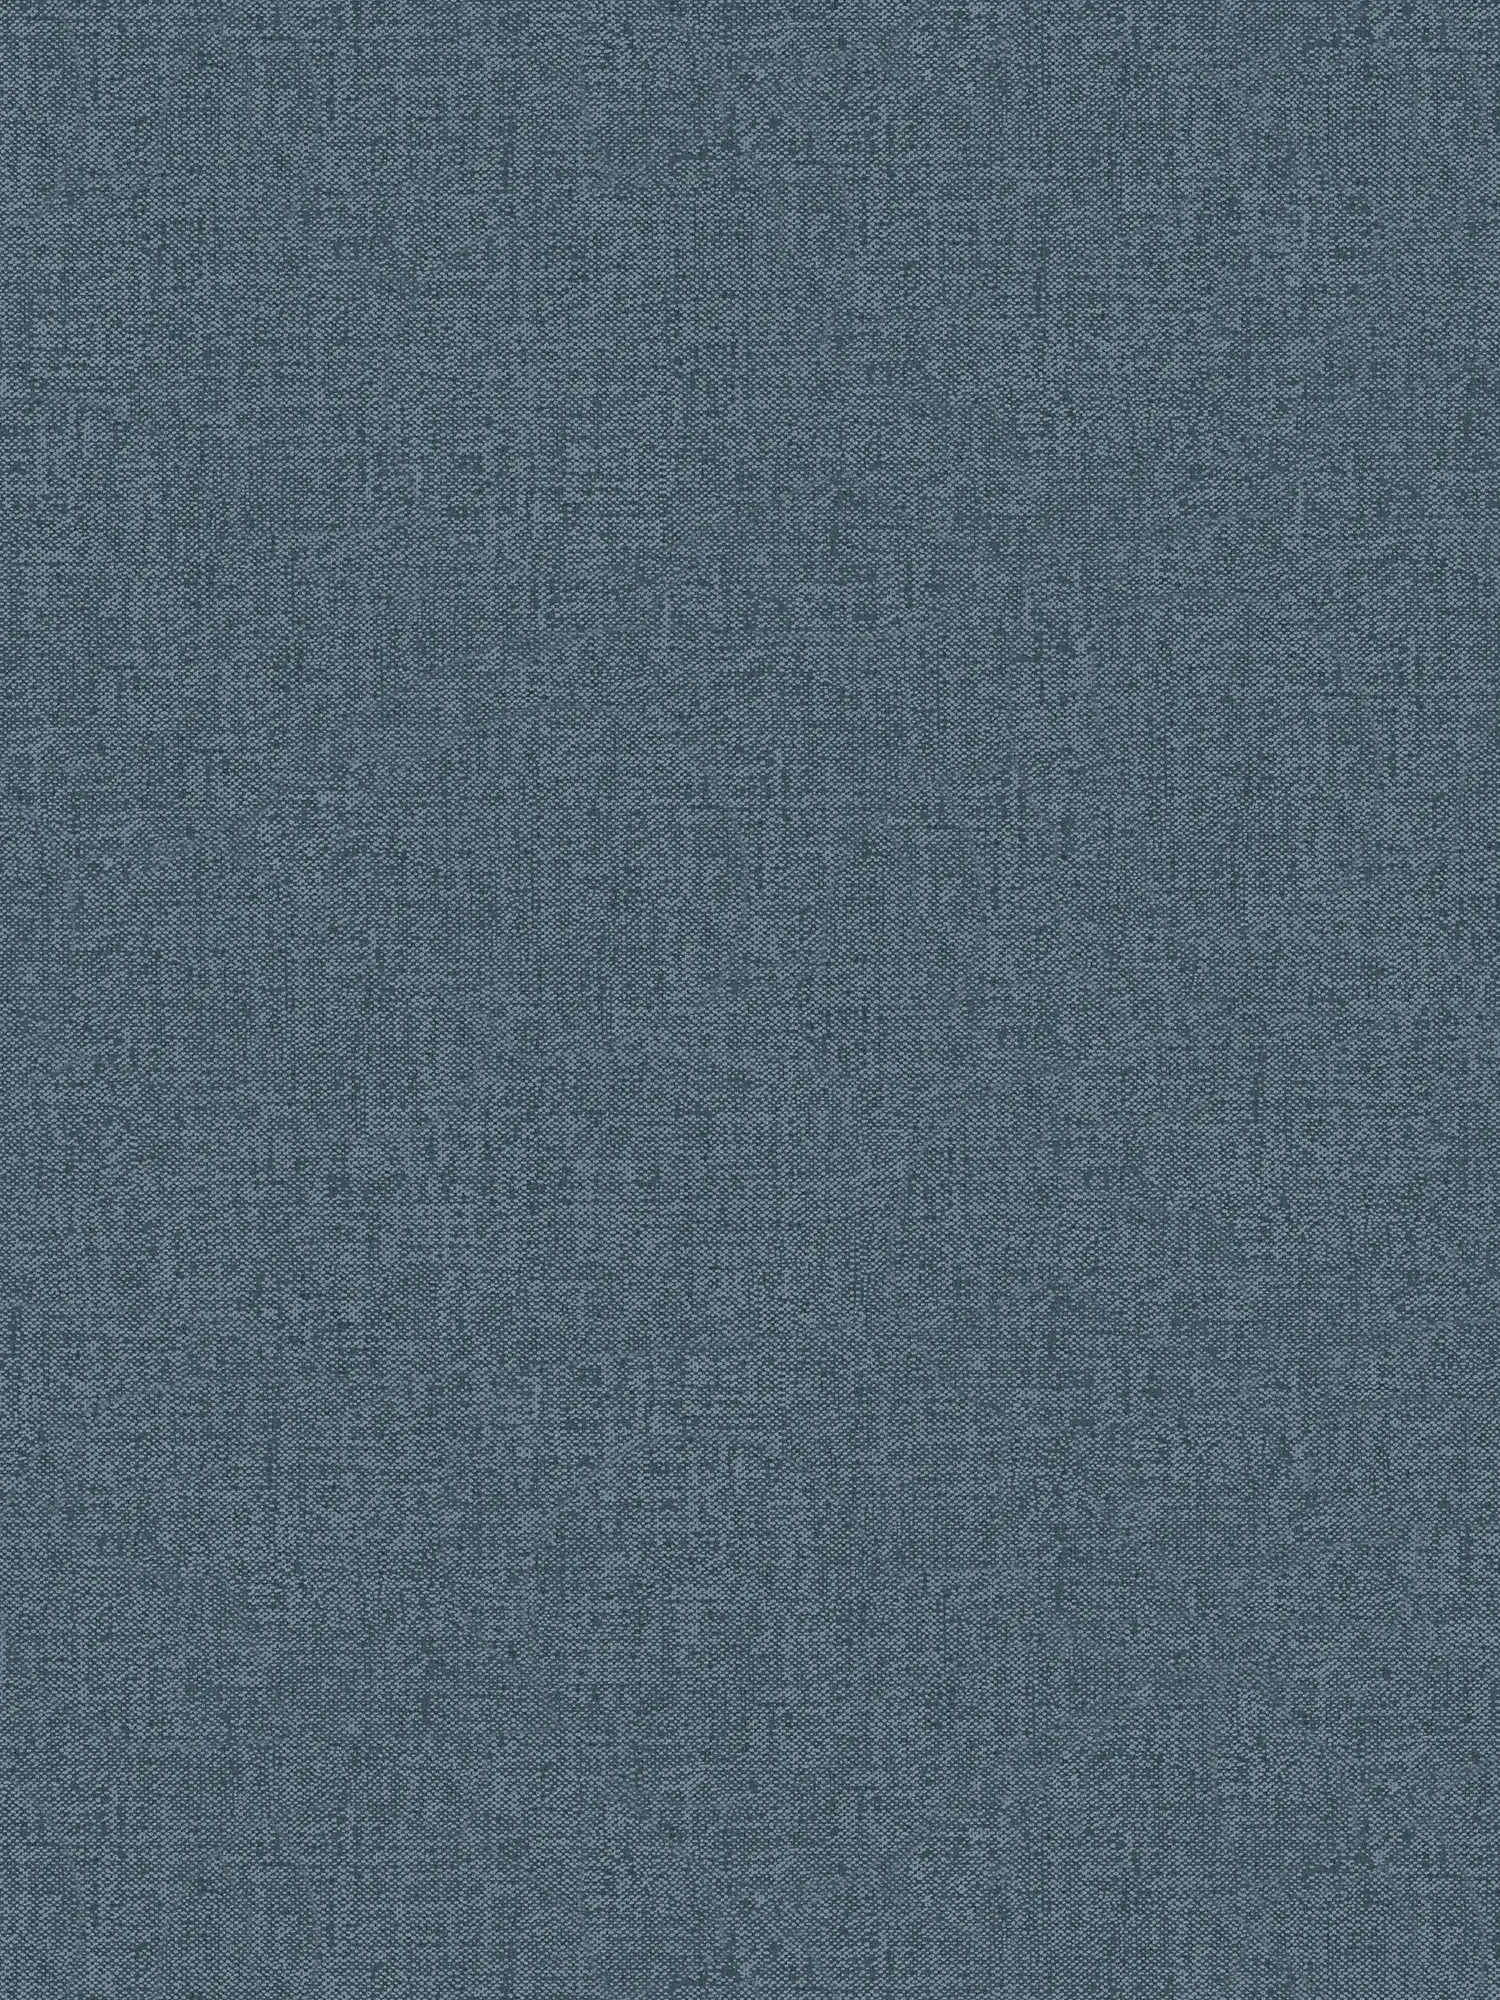 Textiel-look behang jeans blauw met stofstructuur - blauw
